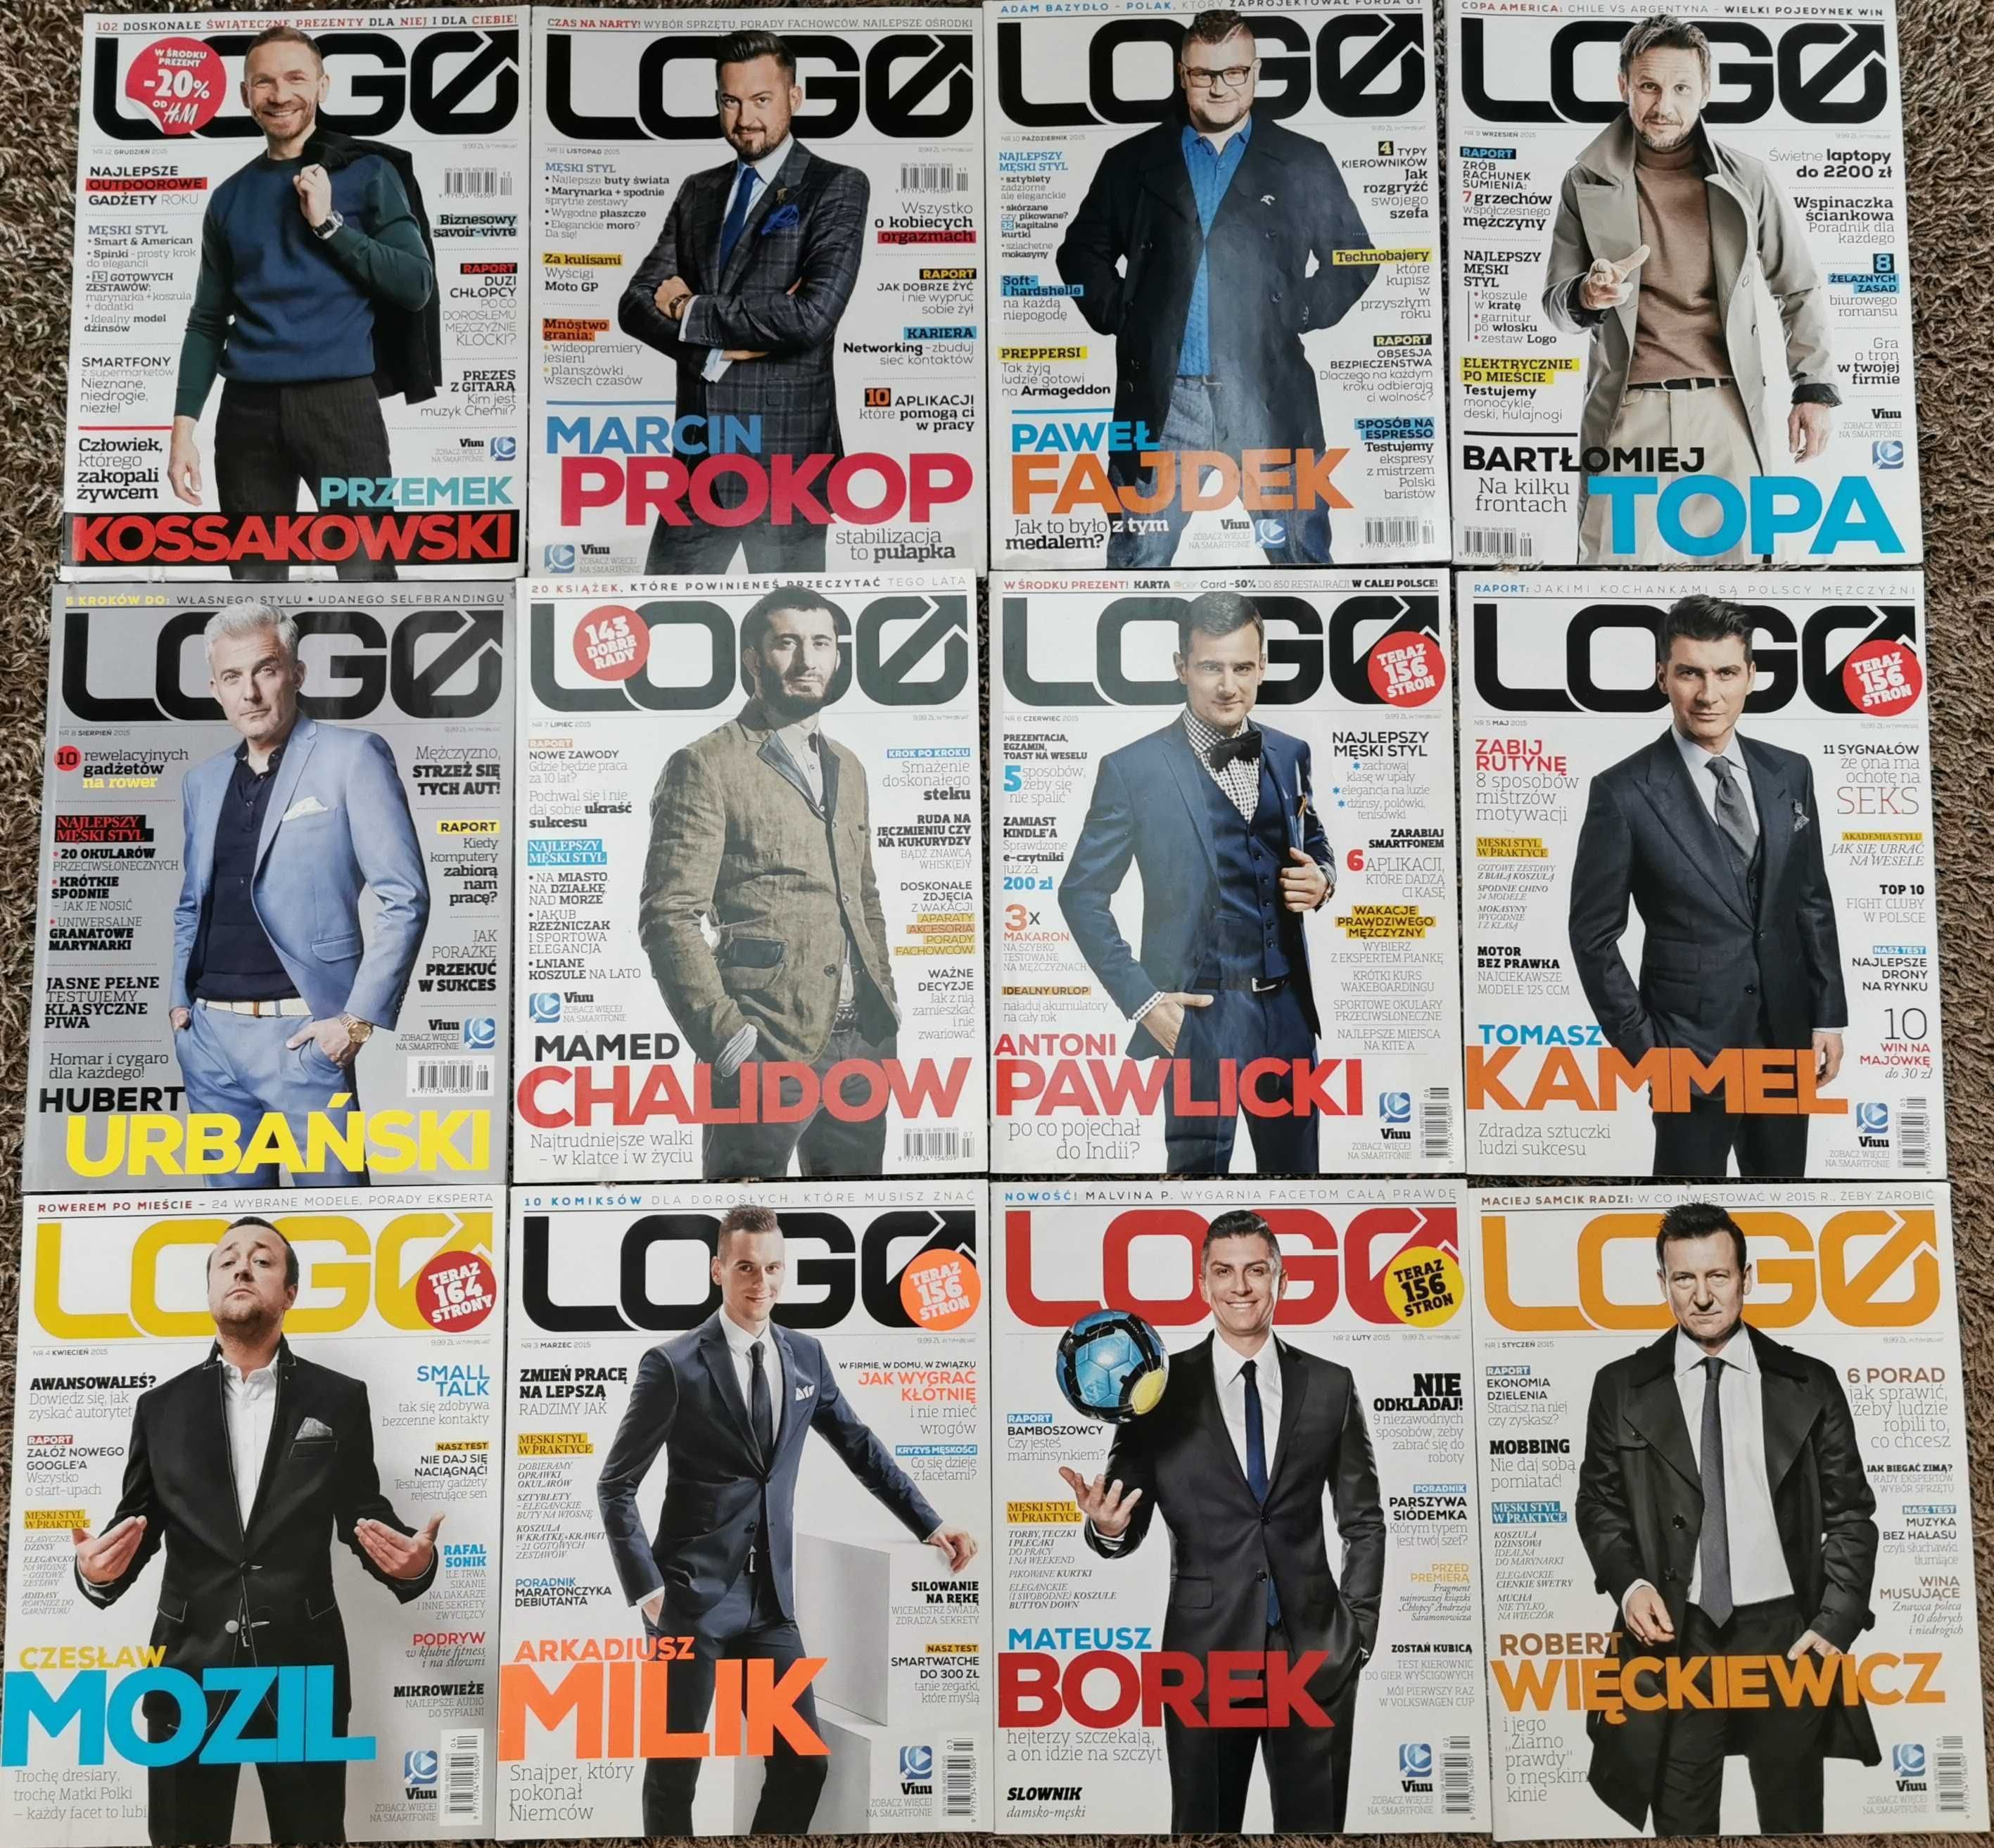 Magazyn miesięcznik LOGO pełny rocznik 2015